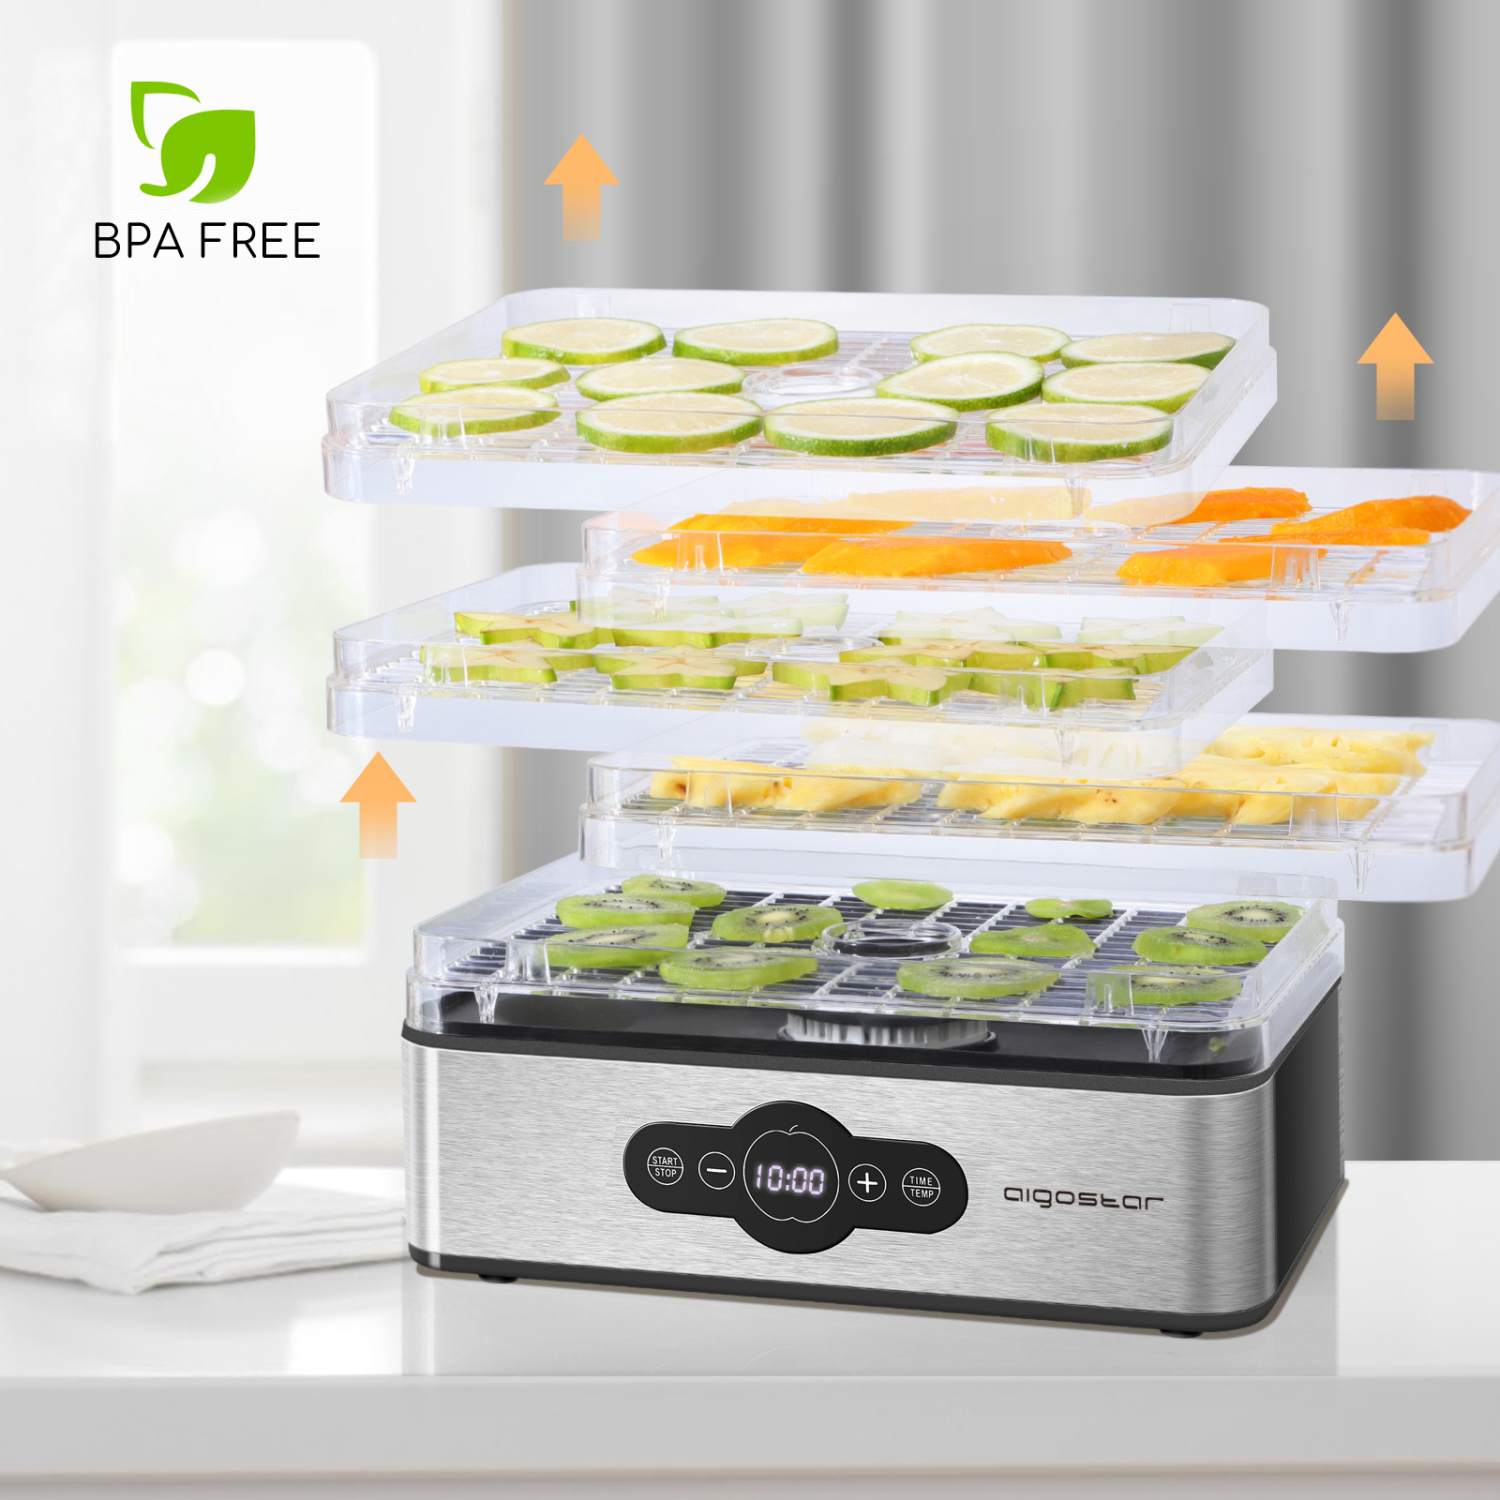 Aigostar Crispy - Deshidratador de alimentos, 240W, 5 bandejas, desecadora automática, deshidrata fruta, carne, verduras etc. controles digitales, ajuste manual de tiempo y temperatura. Libre de BPA.